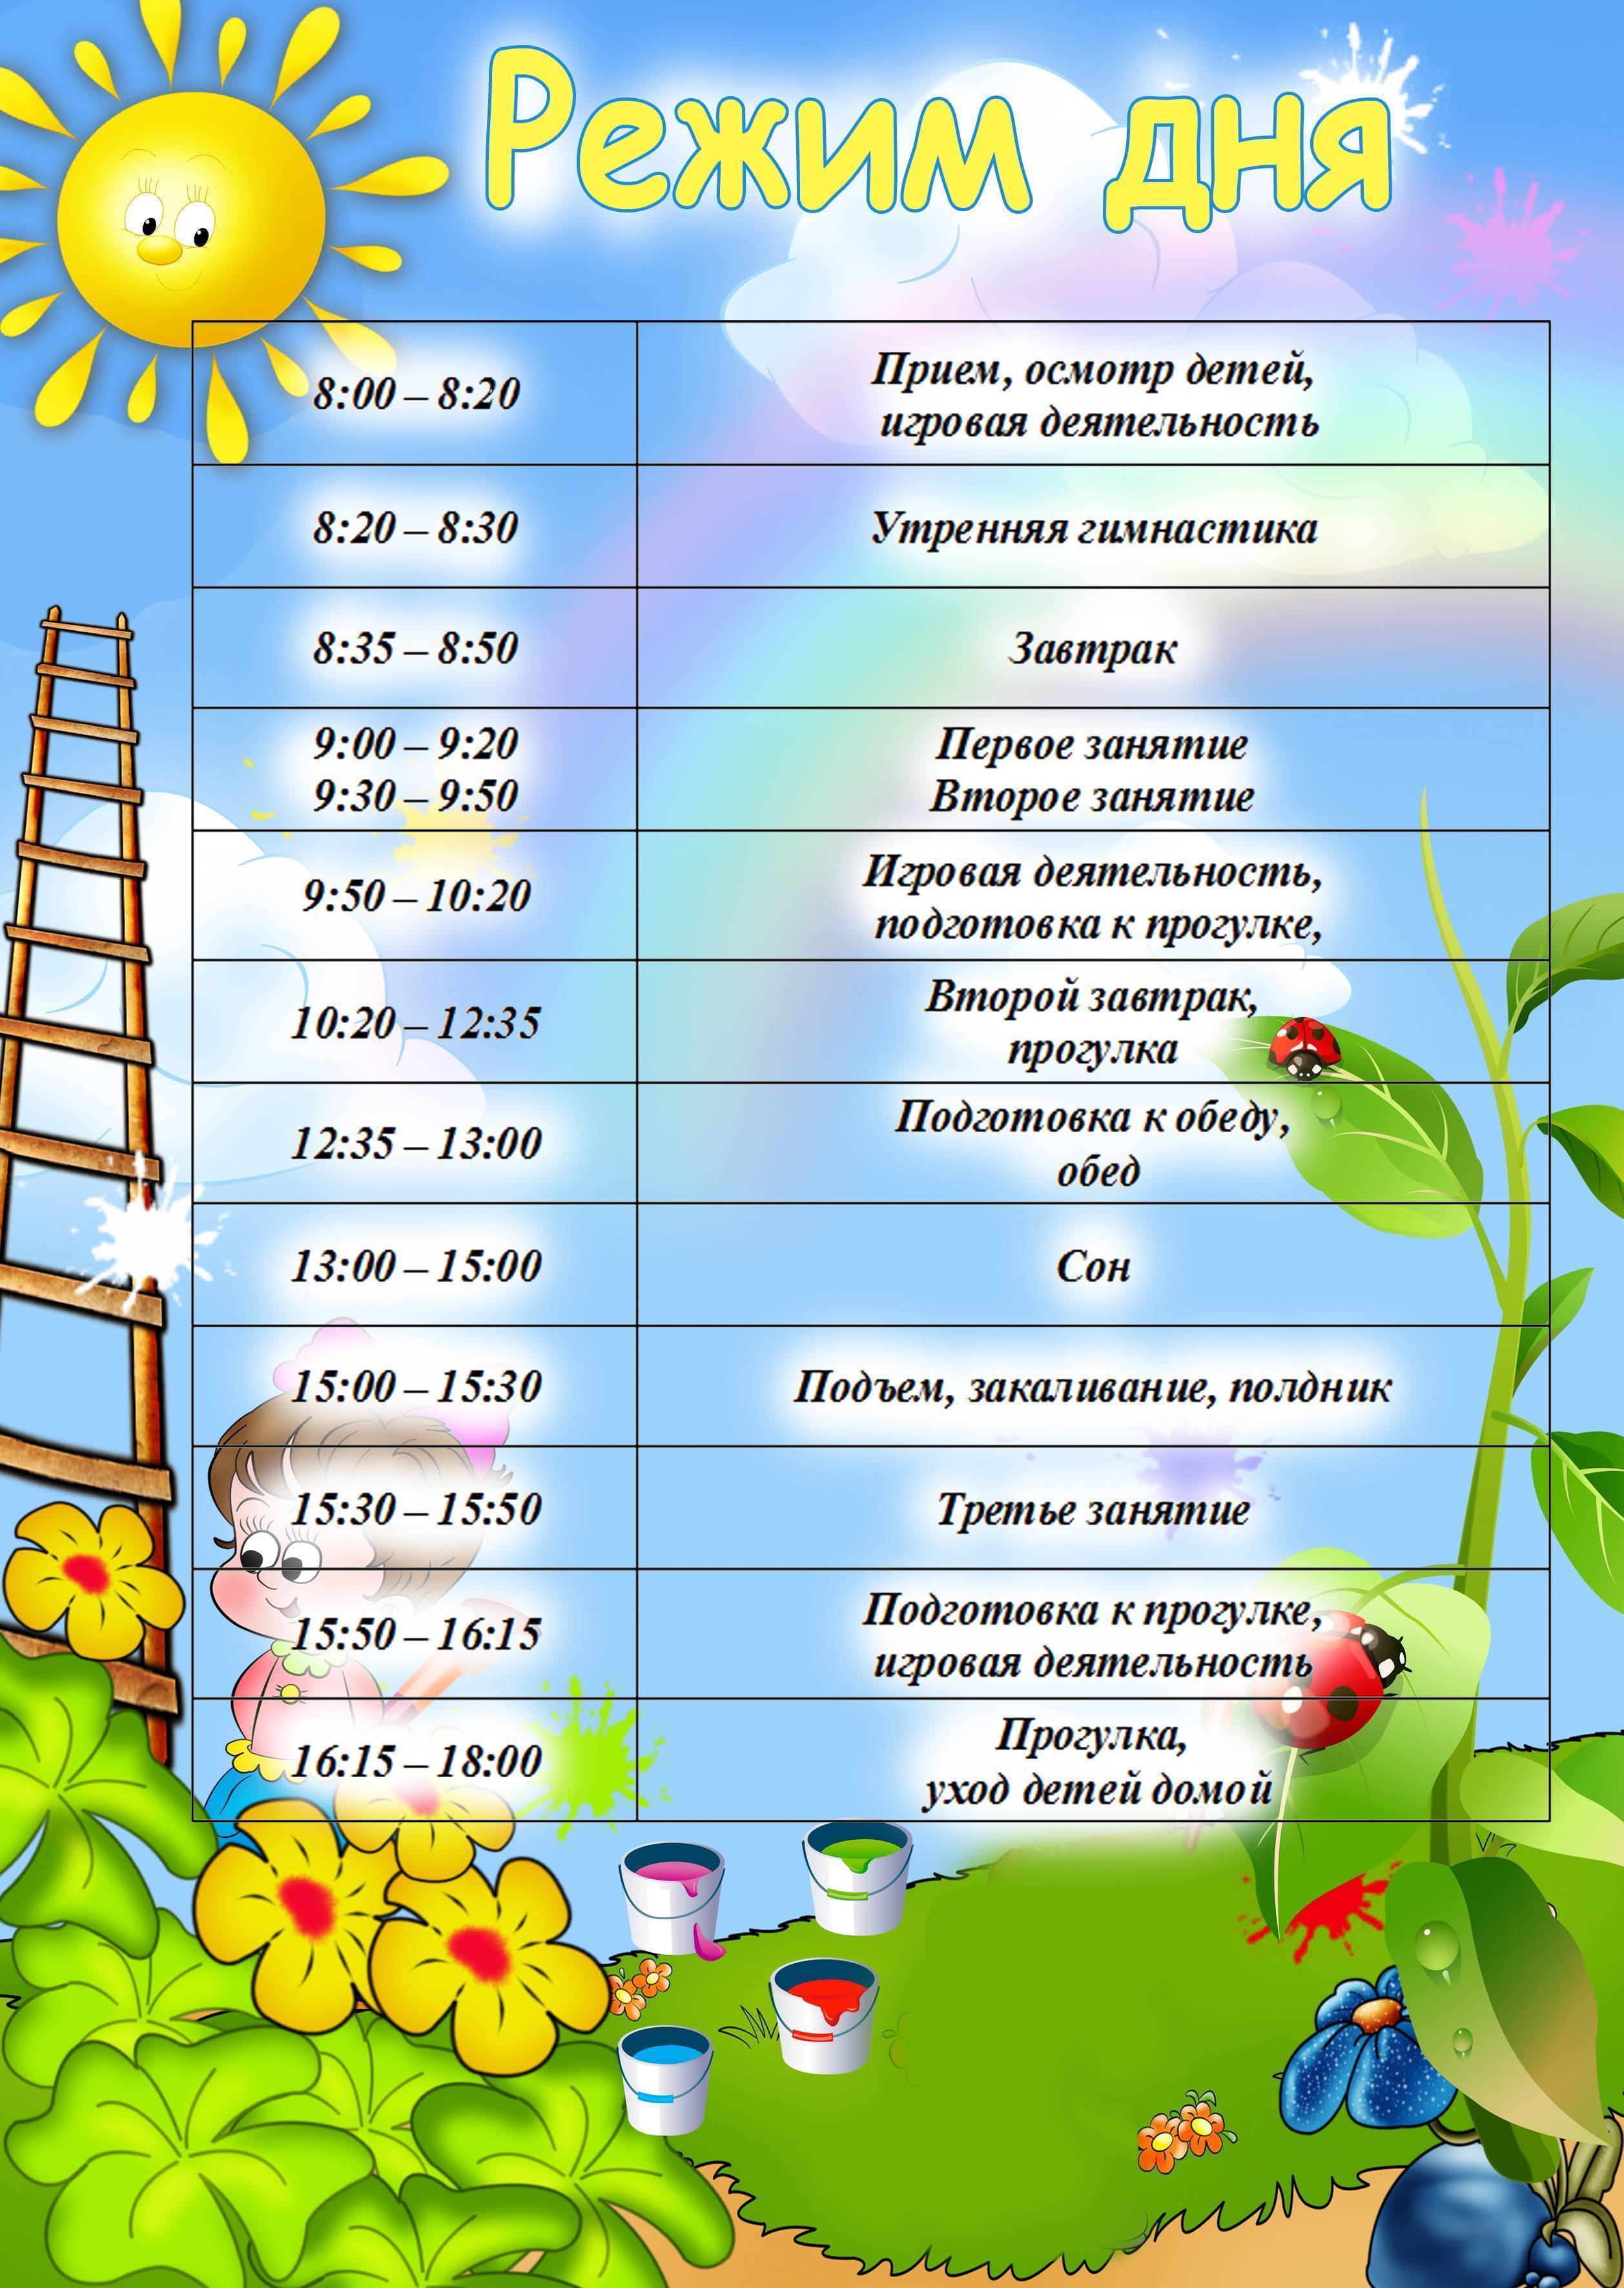 Распорядок дня в детском саду: расписание прогулок, занятий и приемов пищи